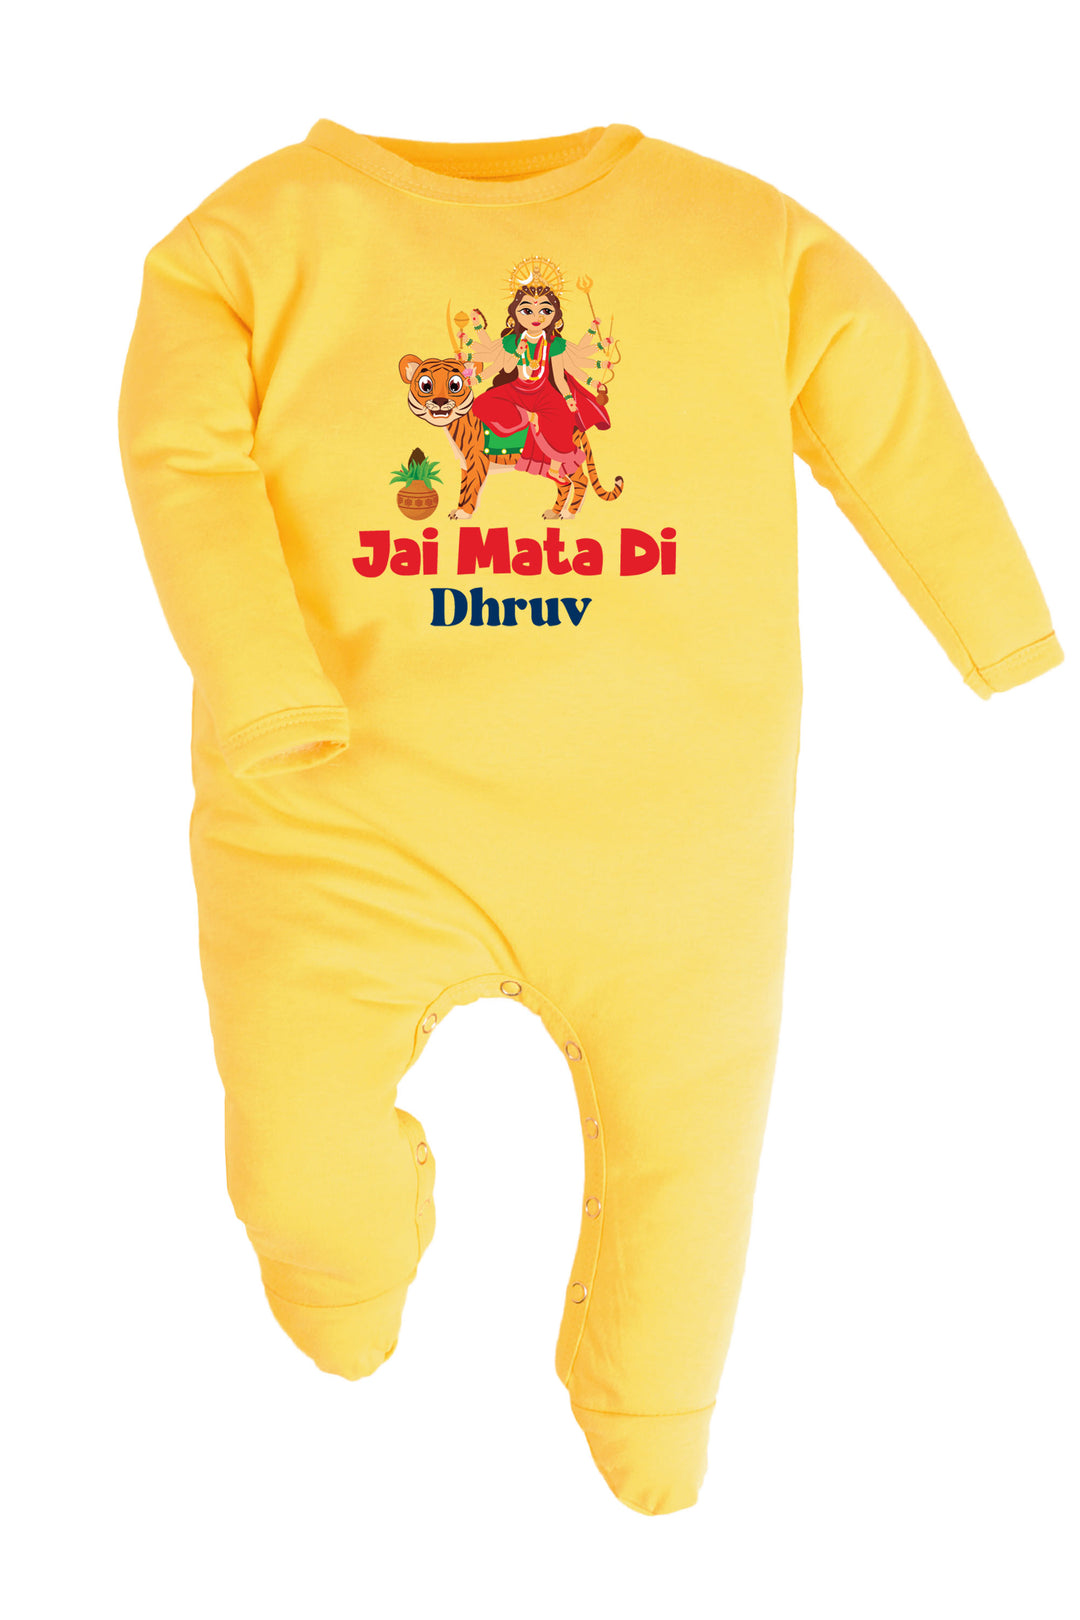 Jai Mata Di Baby Romper | Onesies w/ Custom Name